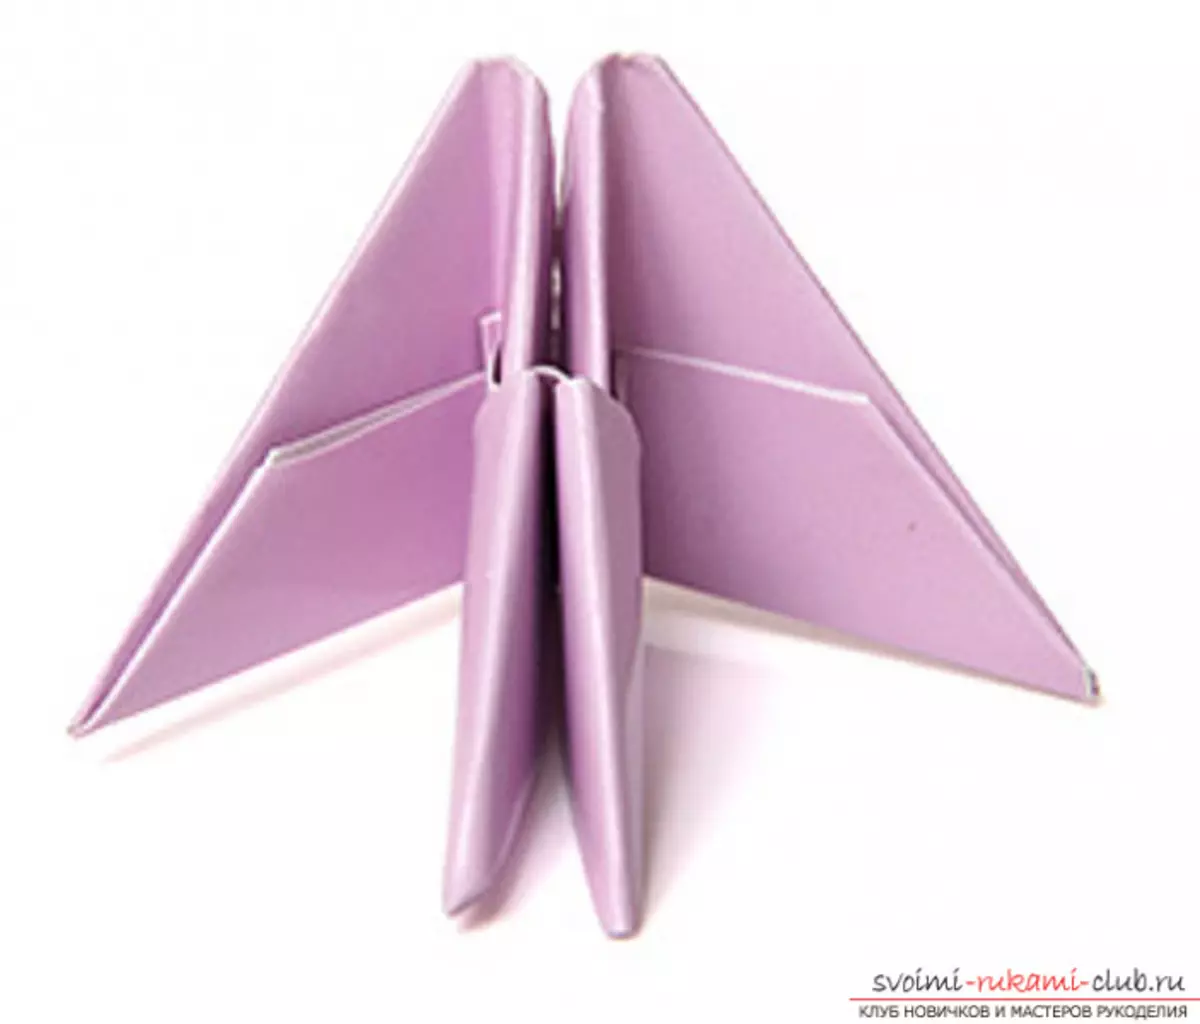 Origami lebed desde el papel: cómo hacer paso a paso con las fotos y el video